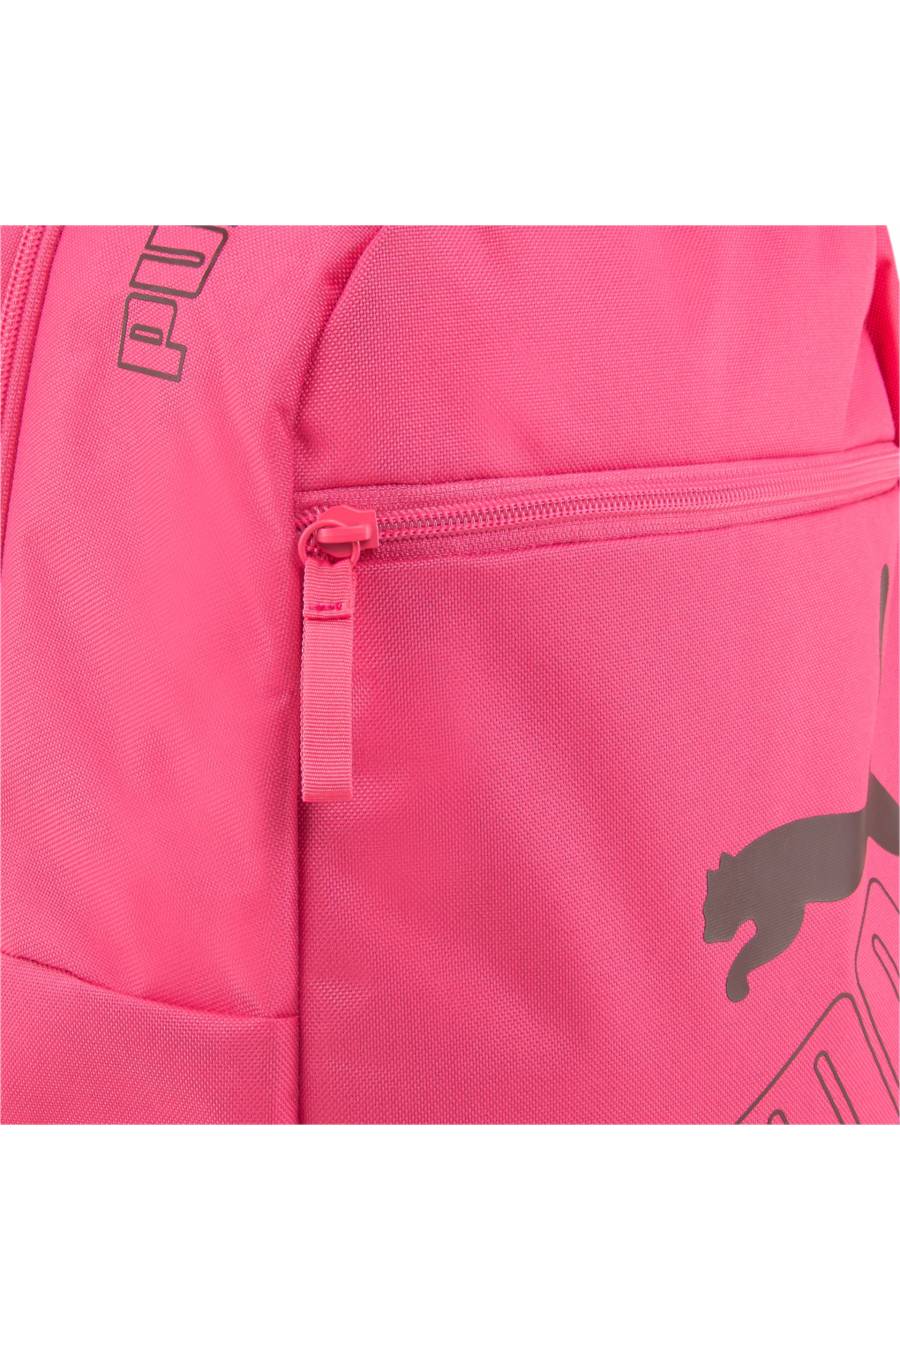 Mochila Puma Phase Backpack II - 077295-20